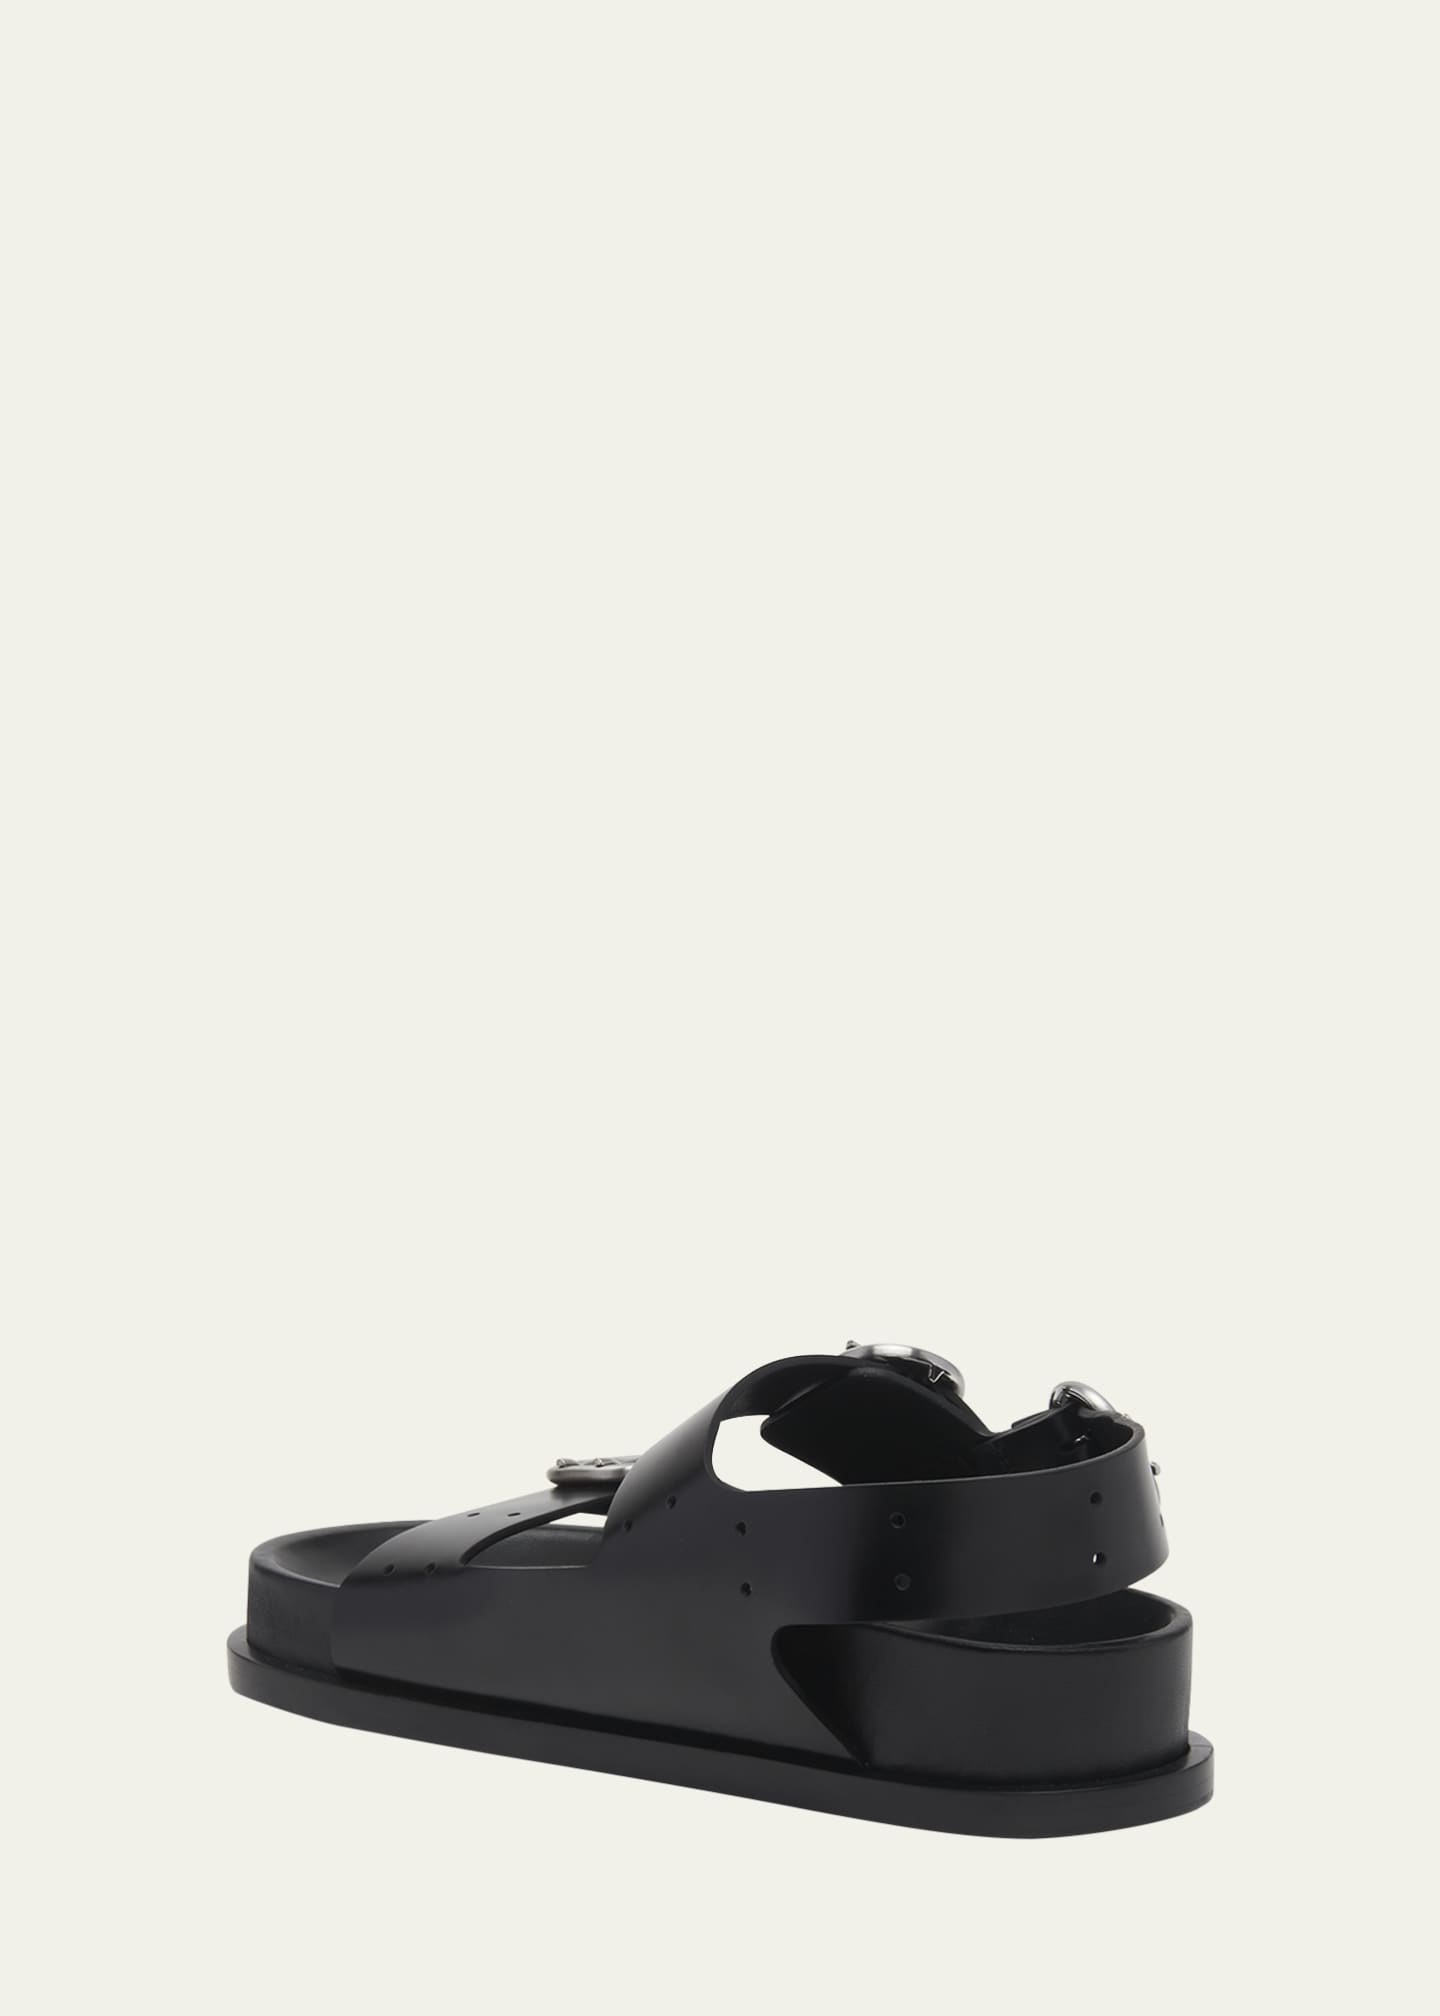 Jil Sander double-buckle leather sandals - Black